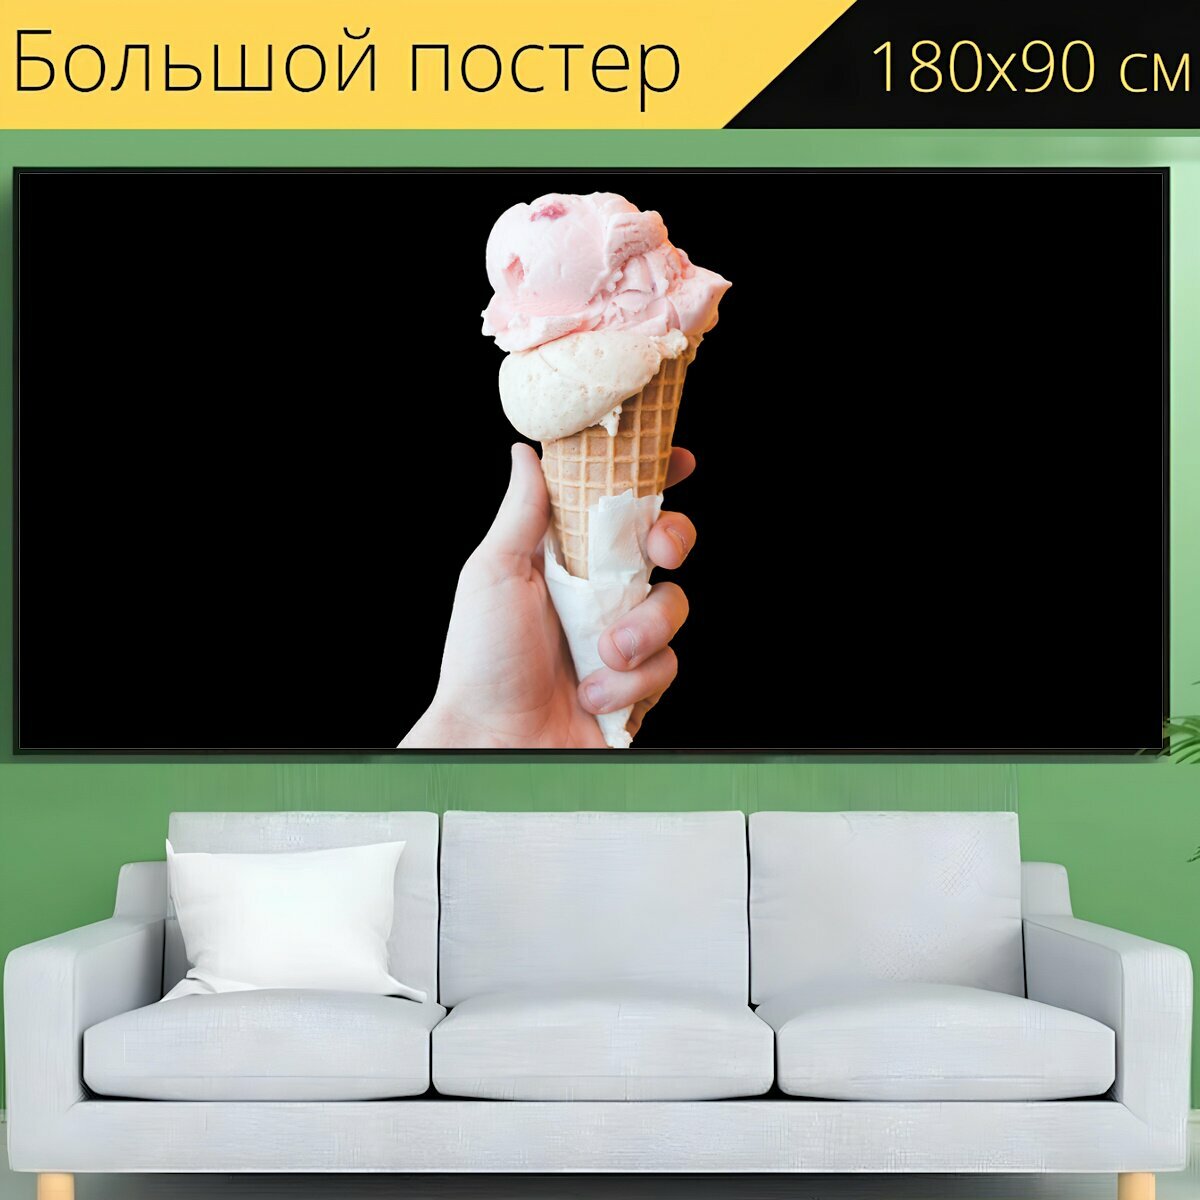 Большой постер "Мороженое, молочное мороженое, мягкое мороженое" 180 x 90 см. для интерьера